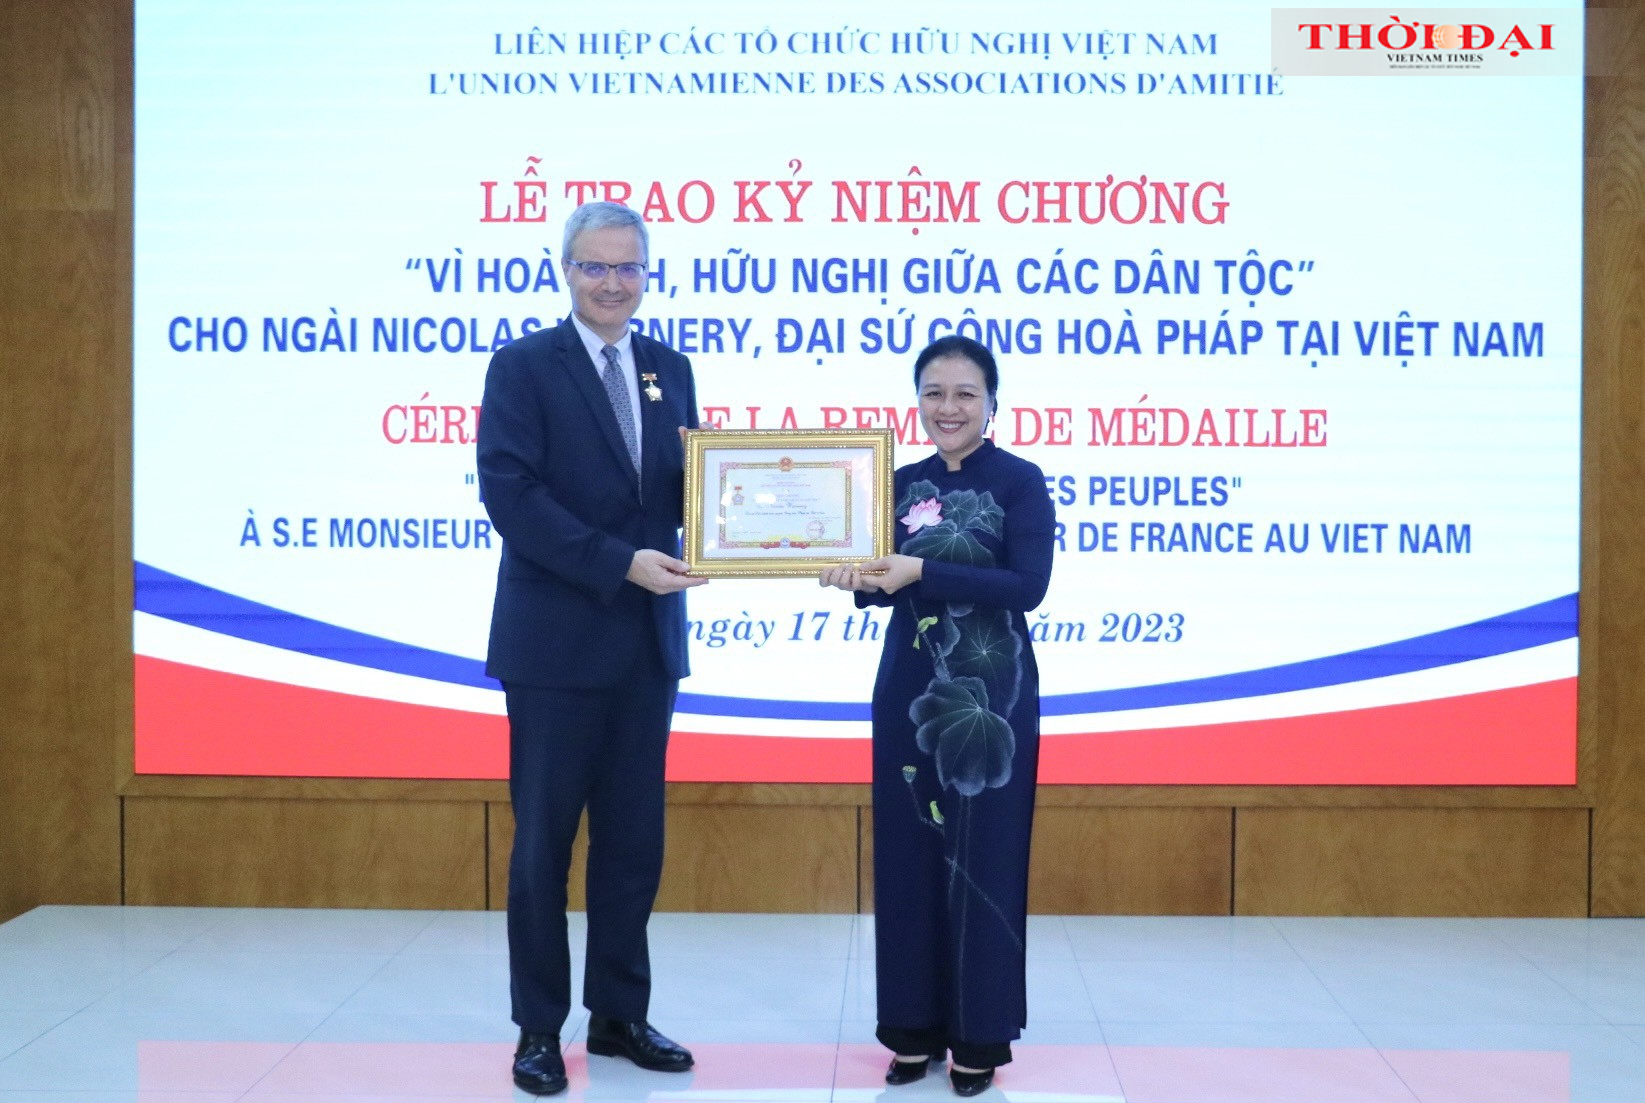 Chủ tịch Liên hiệp các tổ chức hữu nghị Việt Nam Nguyễn Phương Nga trao tặng Kỷ niệm chương Vì hòa bình và hữu nghị giữa các dân tộc cho Ngài Nicolas Warnery, Đại sứ Đặc mệnh toàn quyền Cộng hòa Pháp tại Việt Nam (Ảnh: Thu Hà).